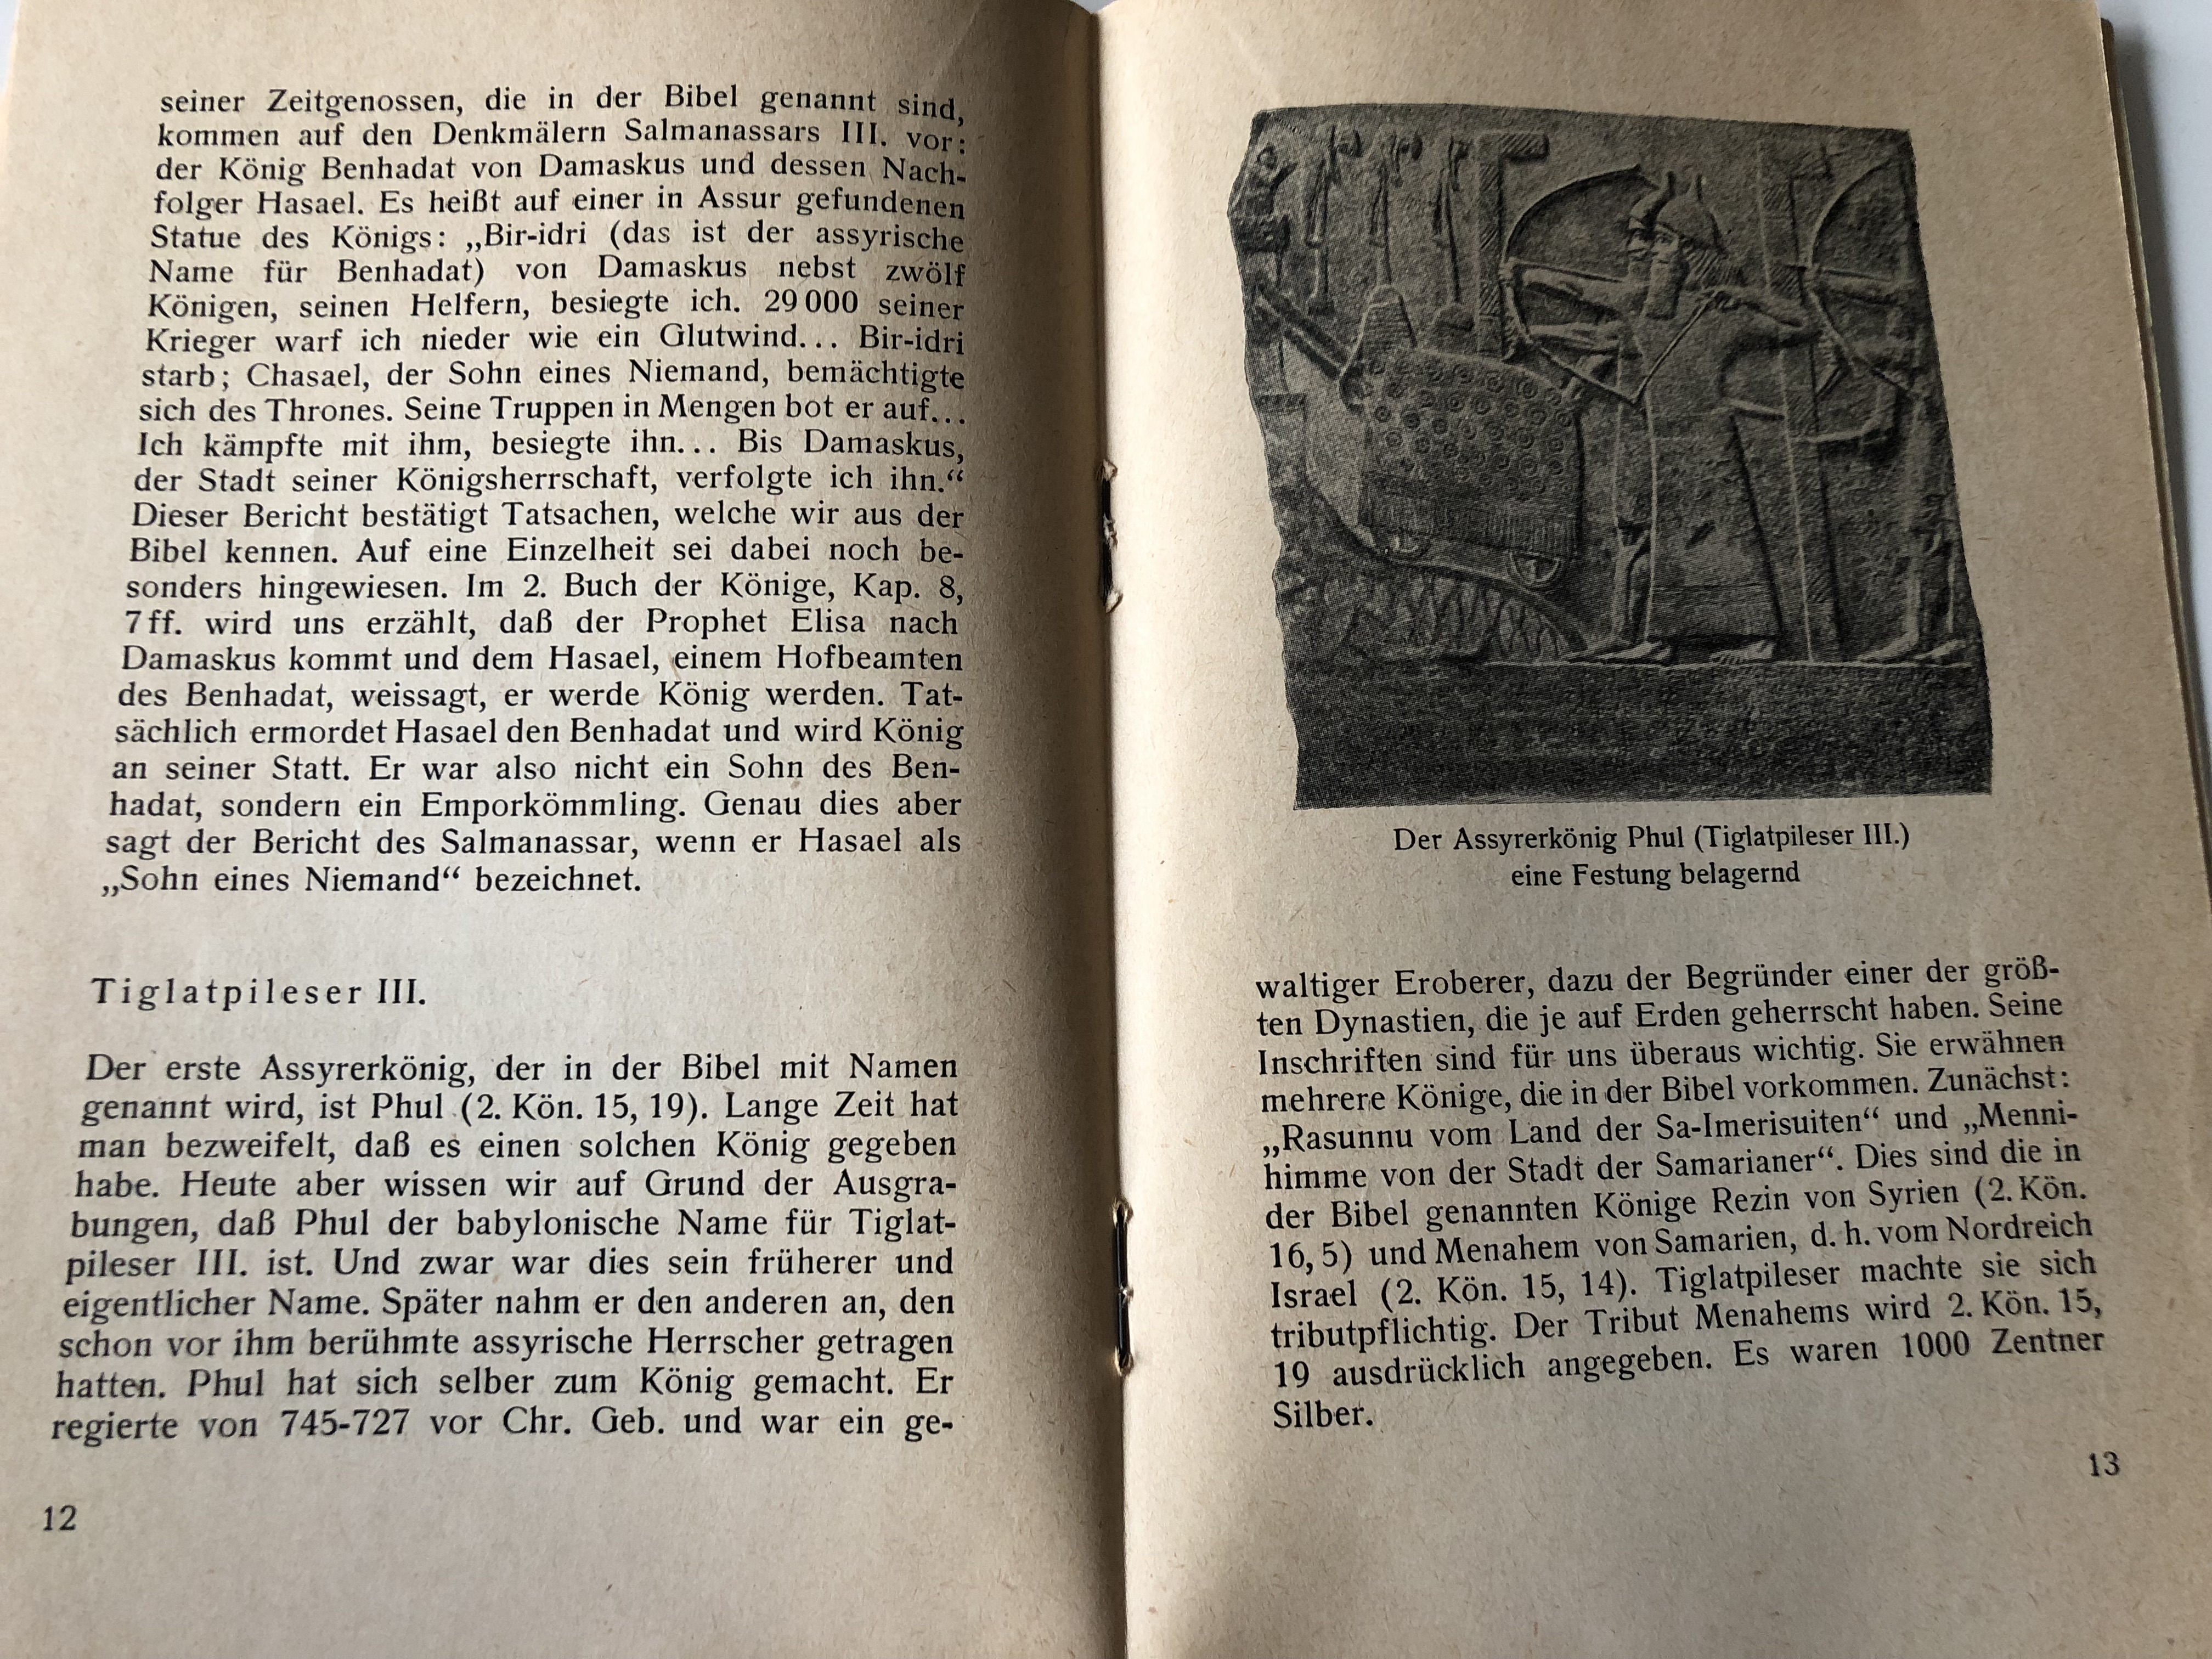 die-bibel-und-das-alten-assyrien-the-bible-and-the-old-assyrians-in-german-language-matthias-schulz-evangelische-verlagsanstalt-berlin-paperback-1964-5-.jpg